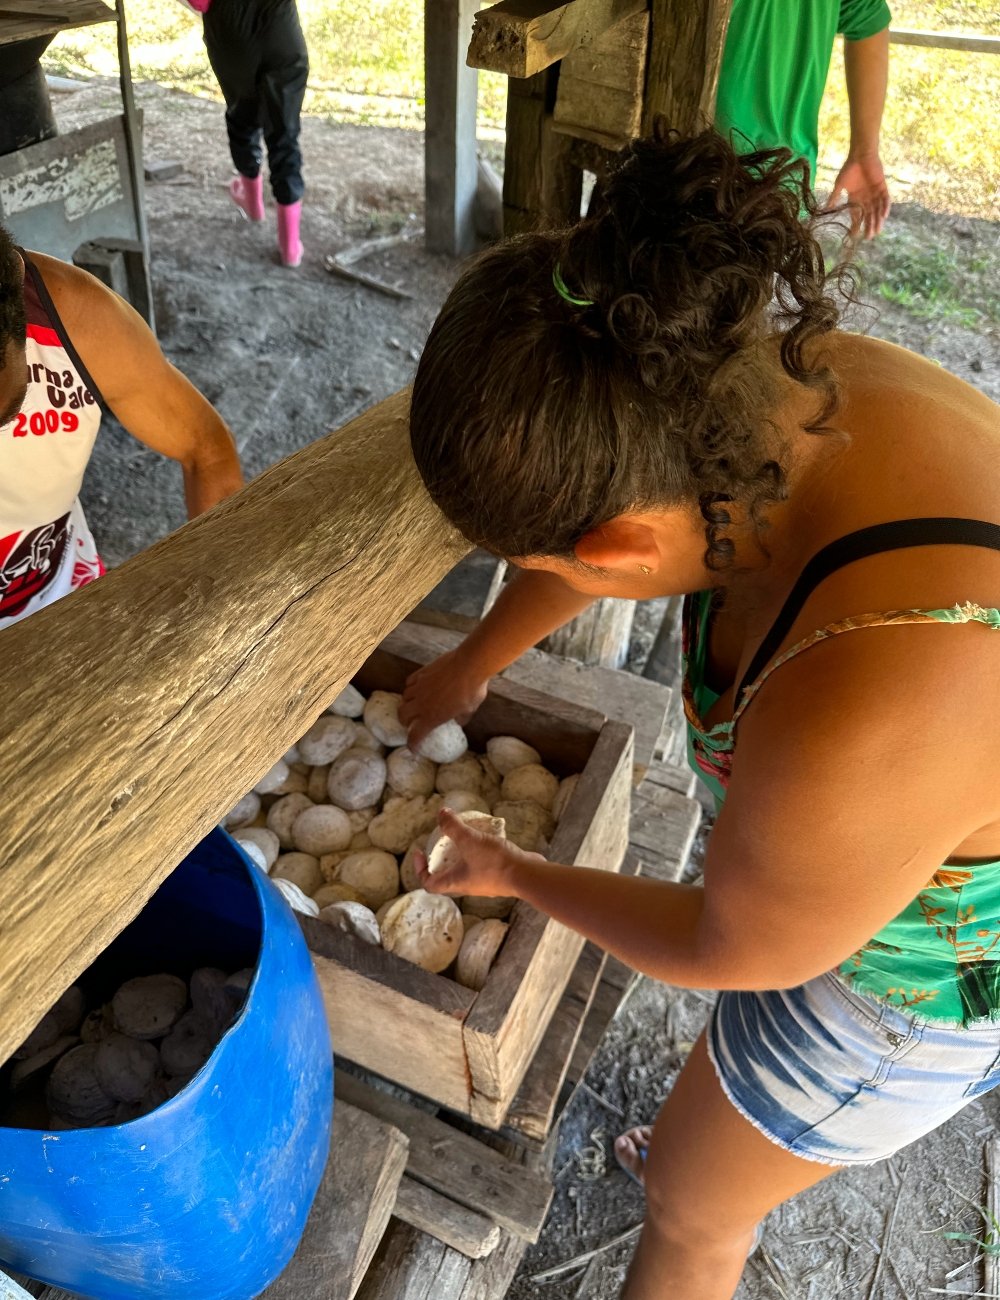 Preparação da borracha na prensa - mulher extrativista - moda sustentável - extração da borracha - Reserva Chico Mendes - Acre - https://stealthelook.com.br